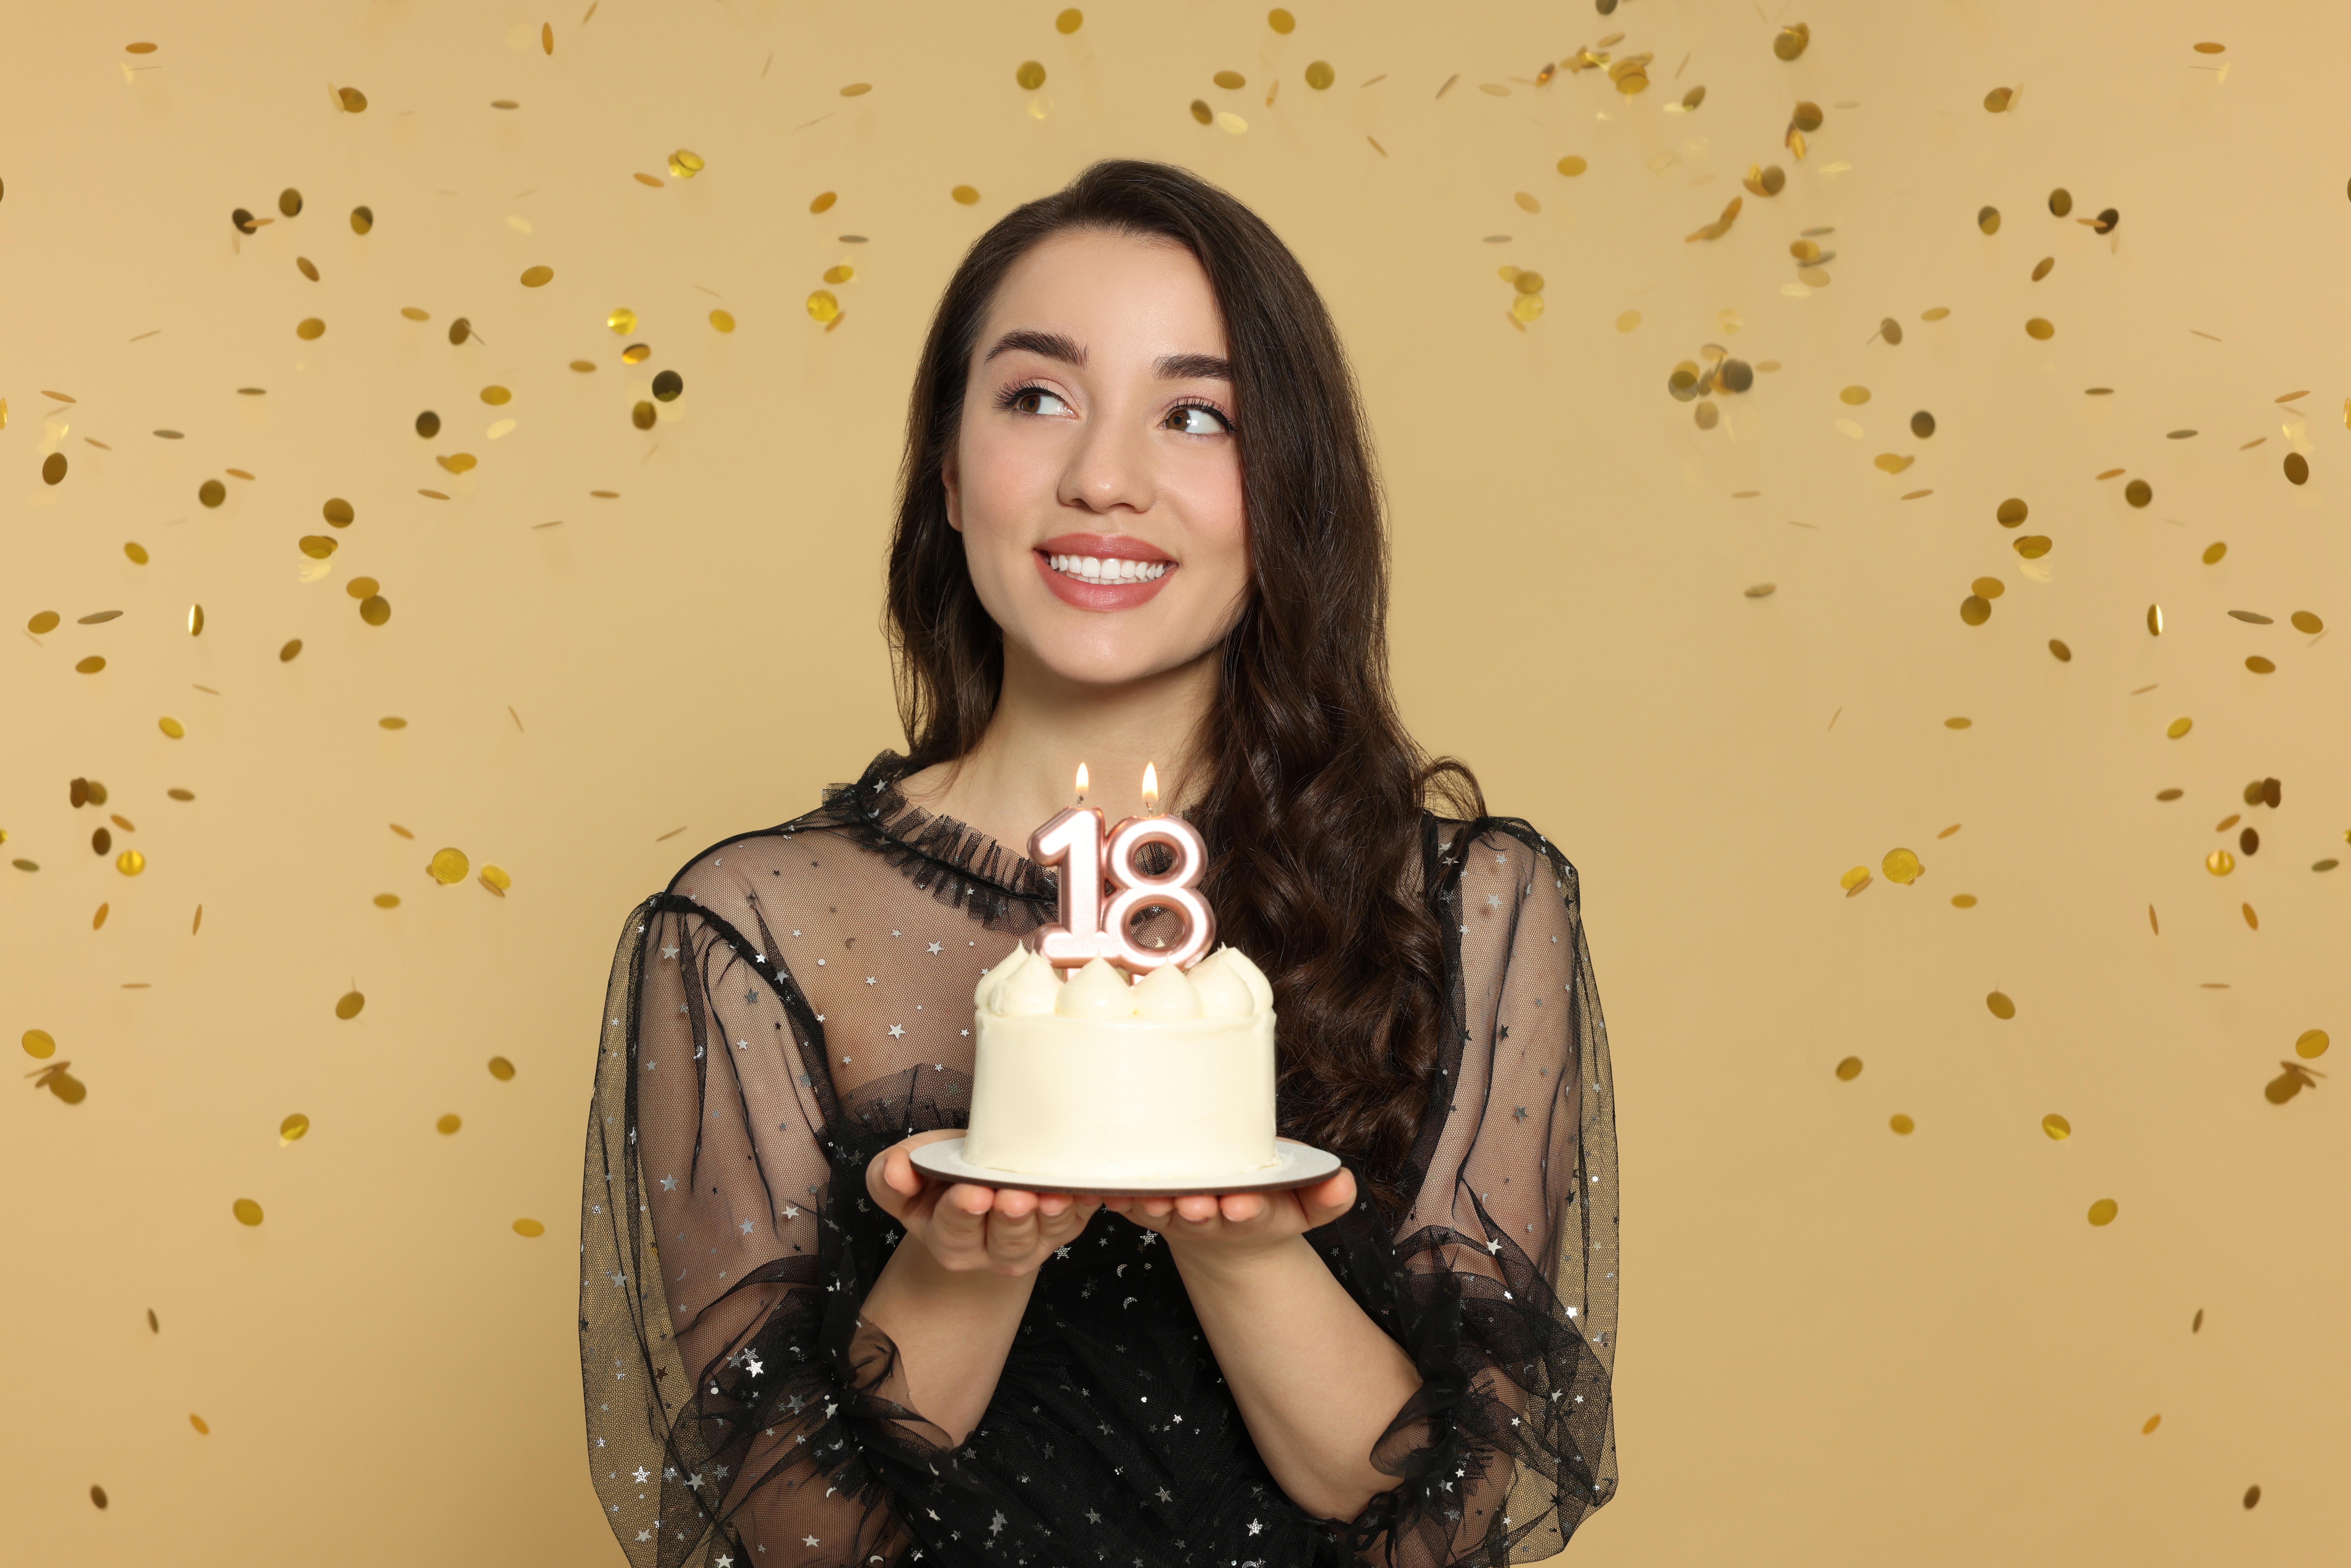 Junge Frau hält ihre Torte zum 18. Geburtstag | Quelle: Shutterstock